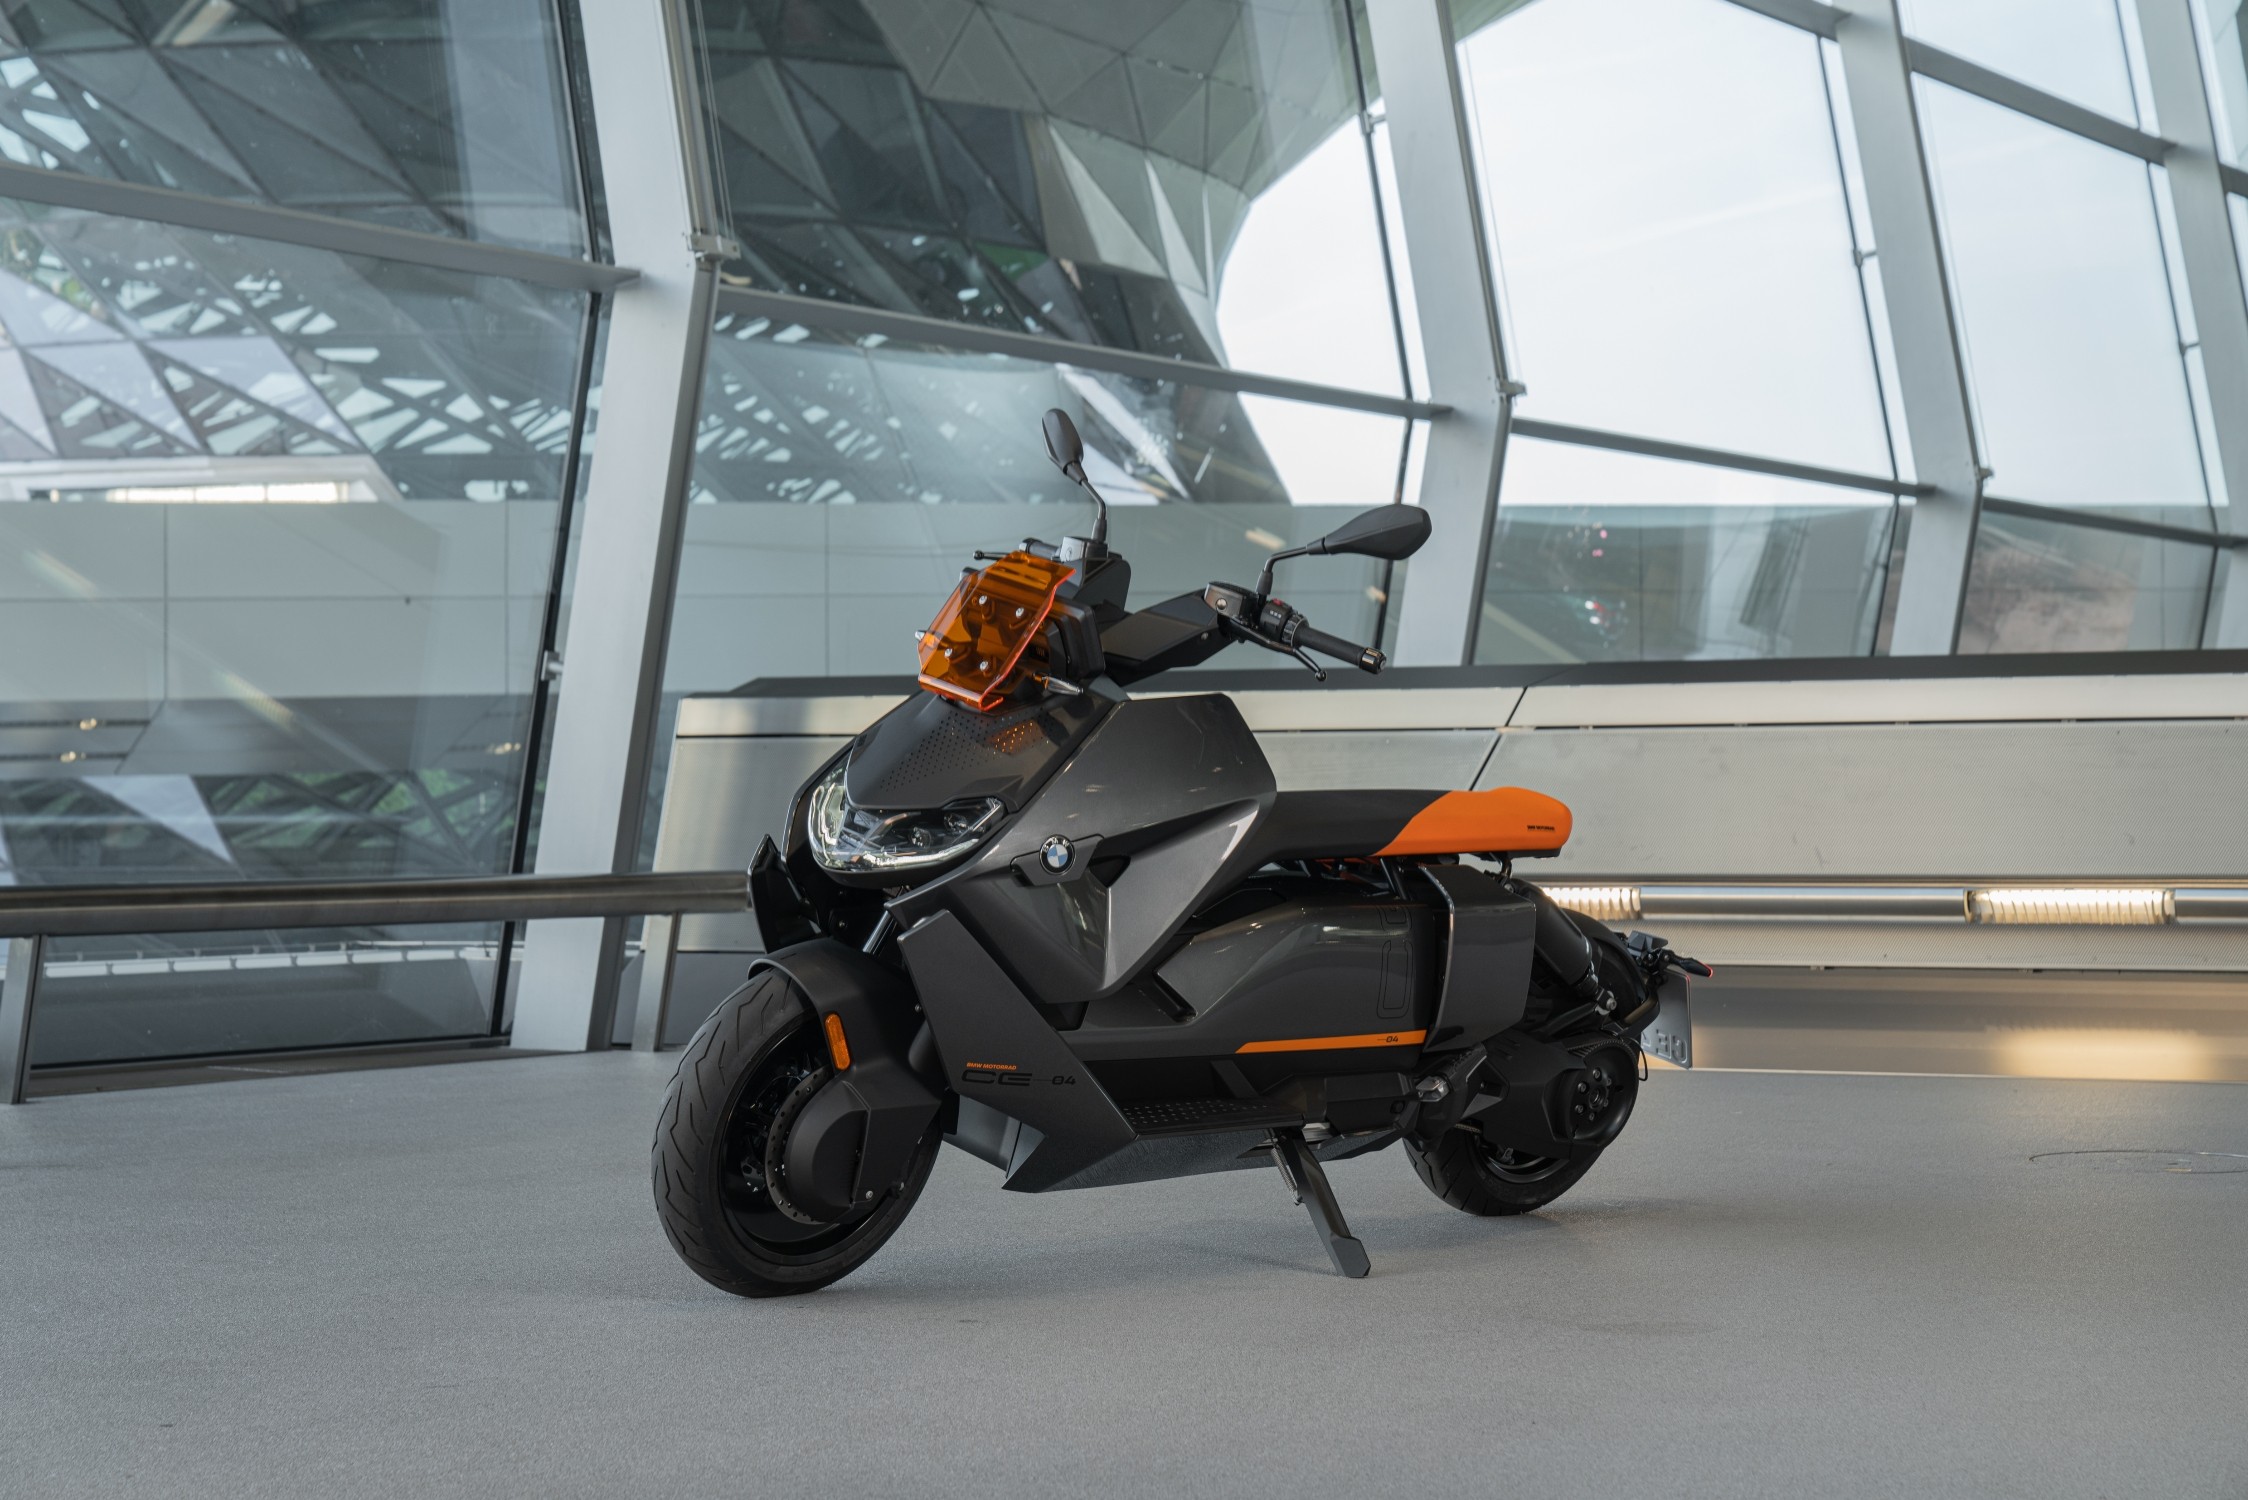 BMW lança scooter elétrica CE 04 com design futurista